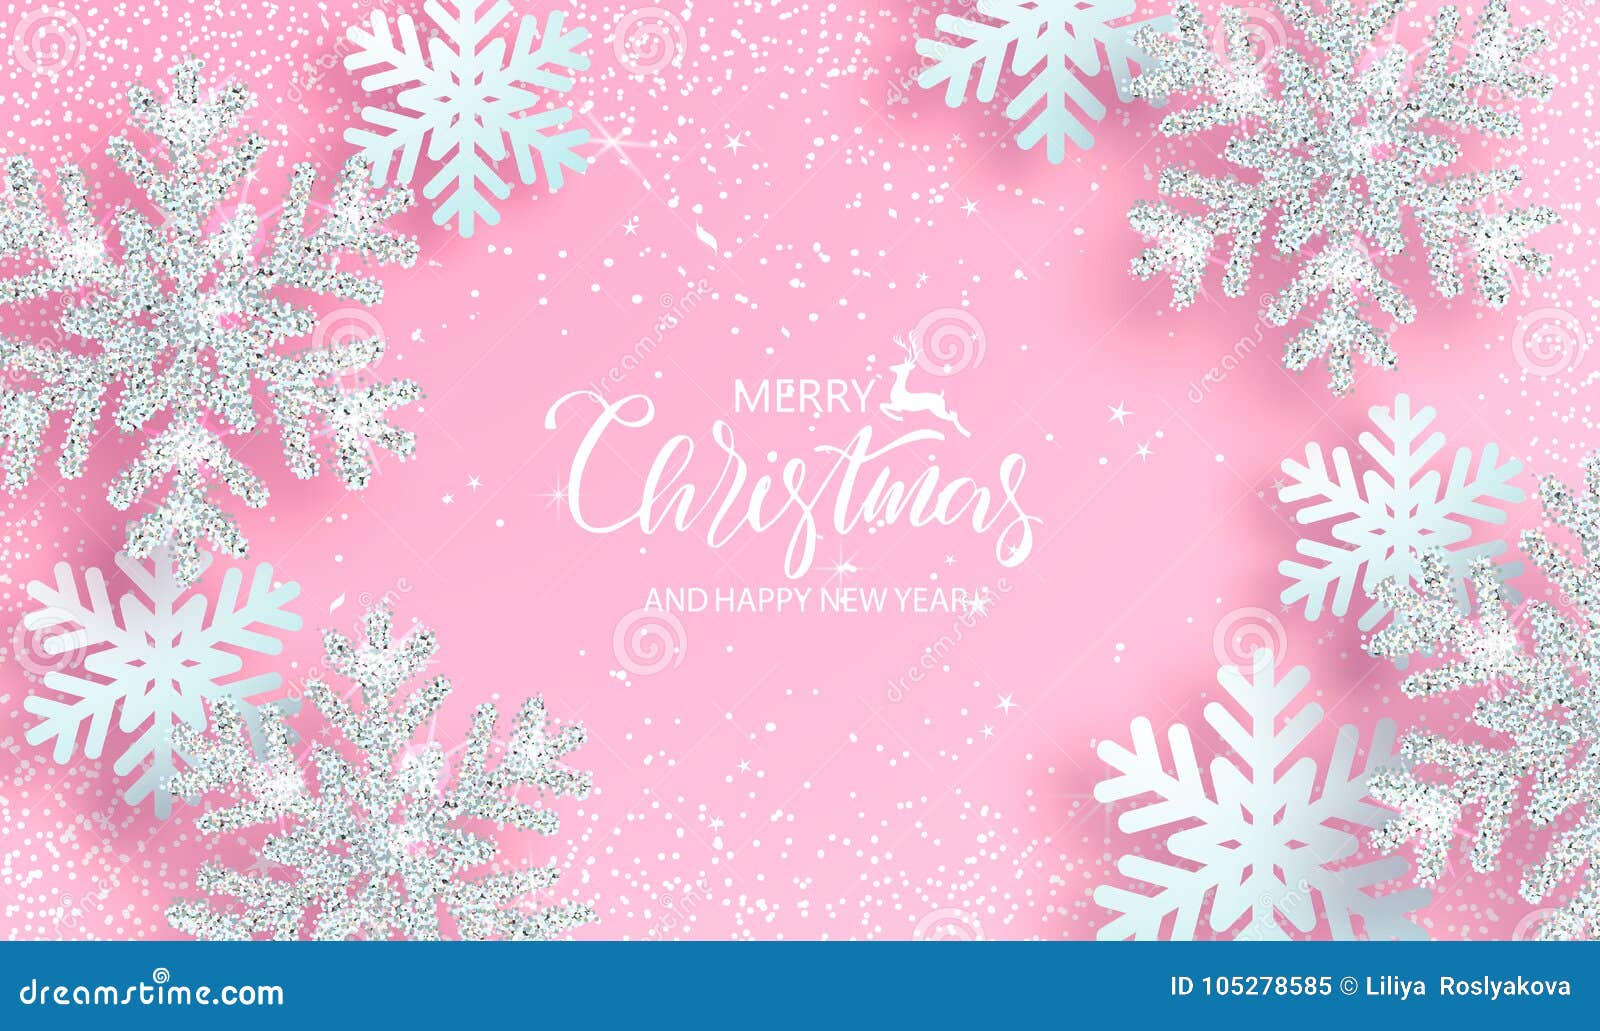 Hãy chiêm ngưỡng nền Giáng Sinh hồng phấn cùng với những tuyết tinh bạch ánh kim lấp lánh! Hình ảnh sẽ mang đến cho bạn cảm giác ấm áp và lãng mạn trong mùa lễ hội này.